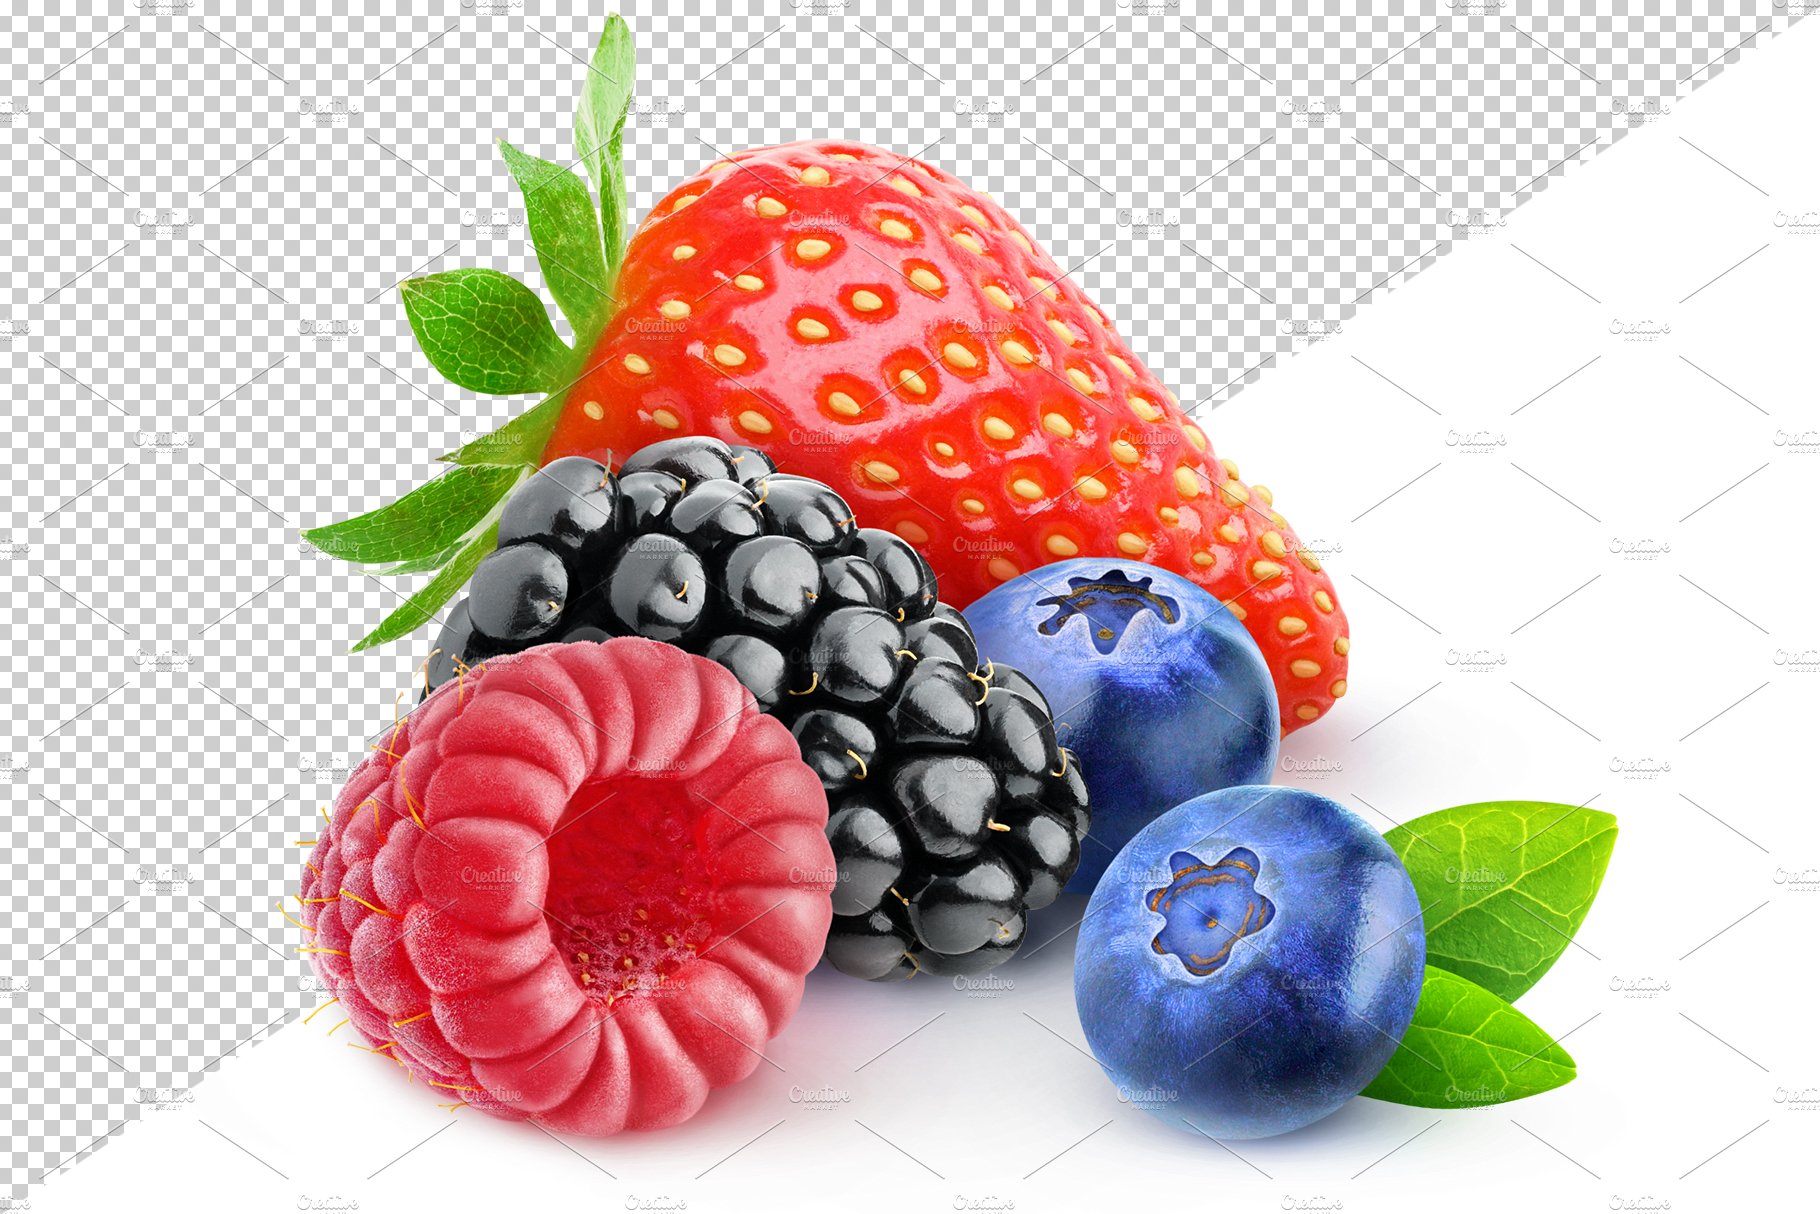 berries41b 233